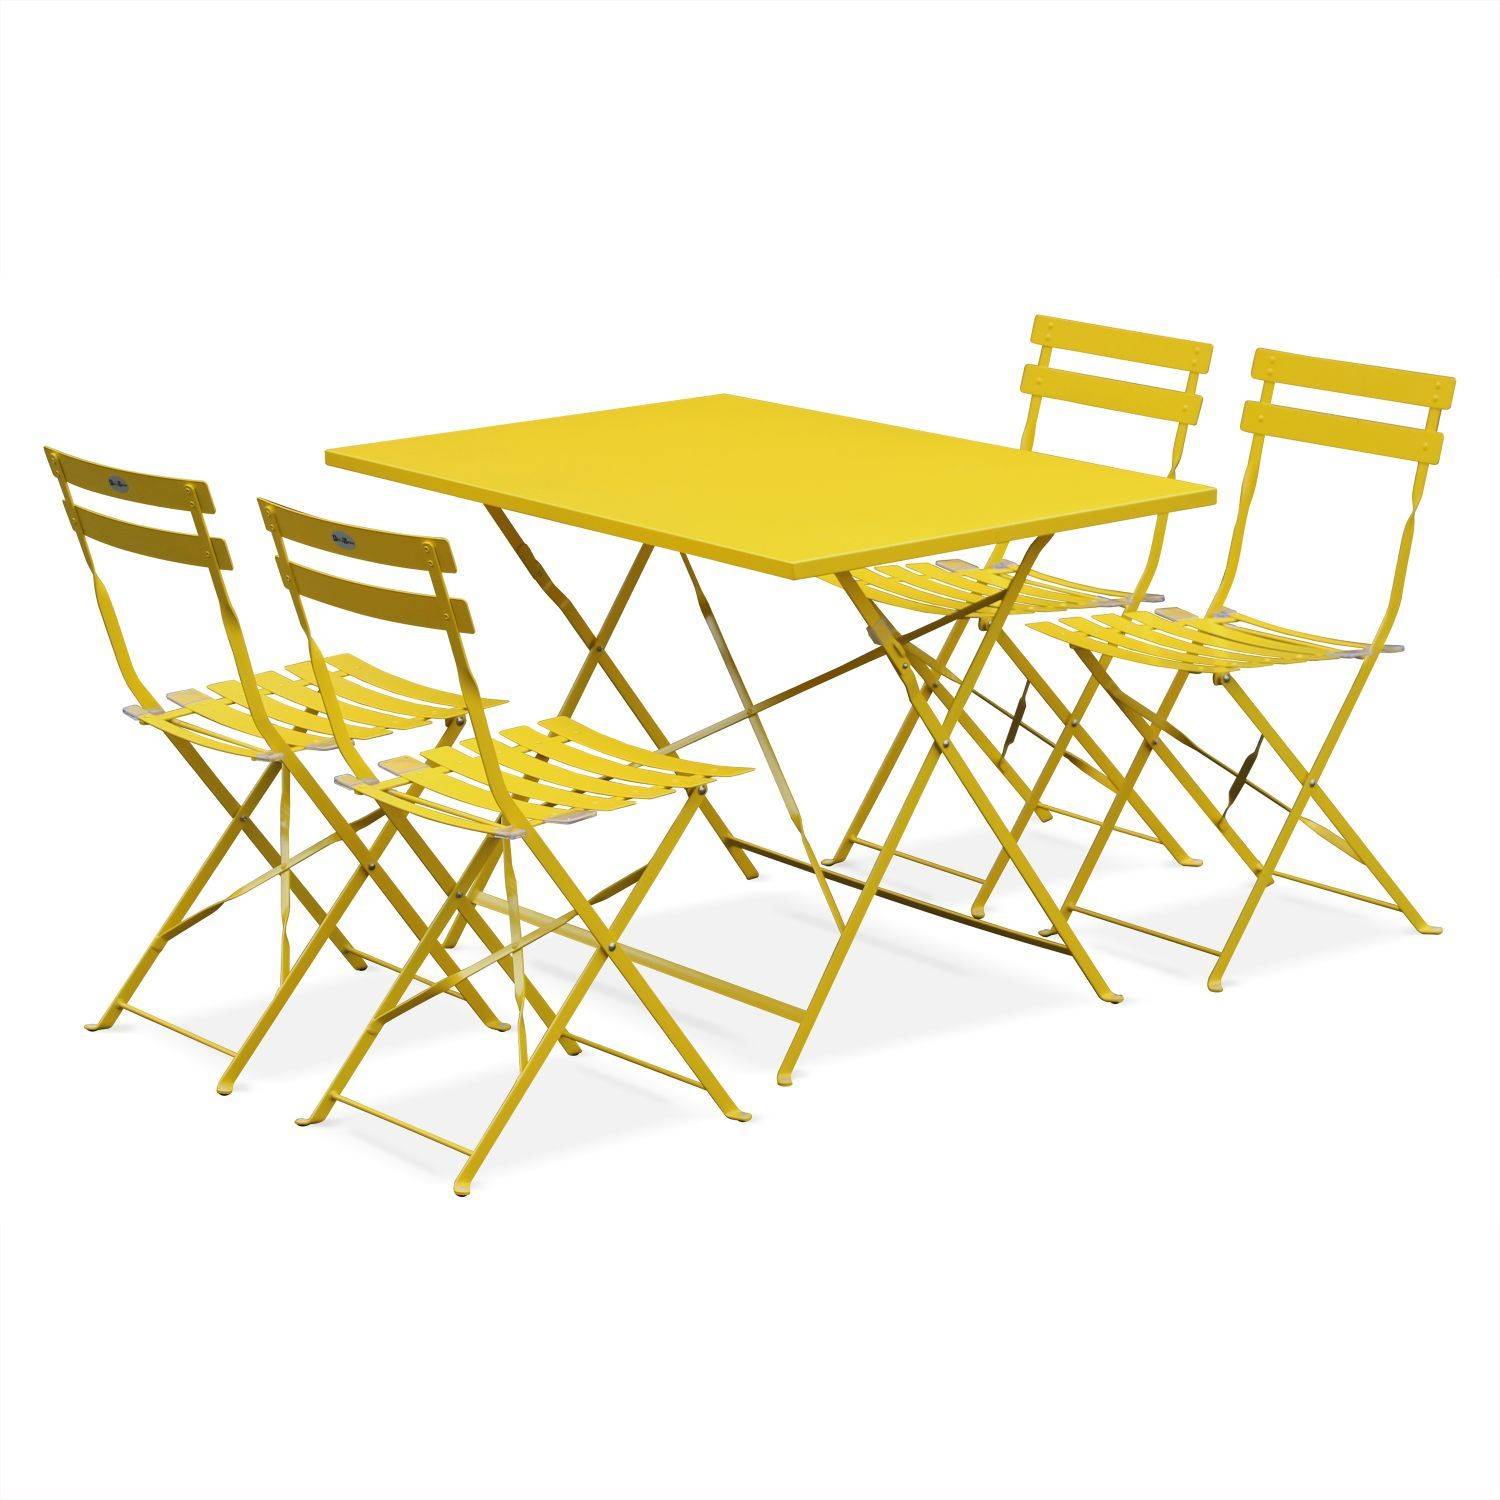 Klappbare Bistro-Gartengarnitur - Rechteckig Emilia gelb - 110 x 70 cm großer Tisch mit vier Klappstühlen aus pulverbeschichtetem Stahl Photo2